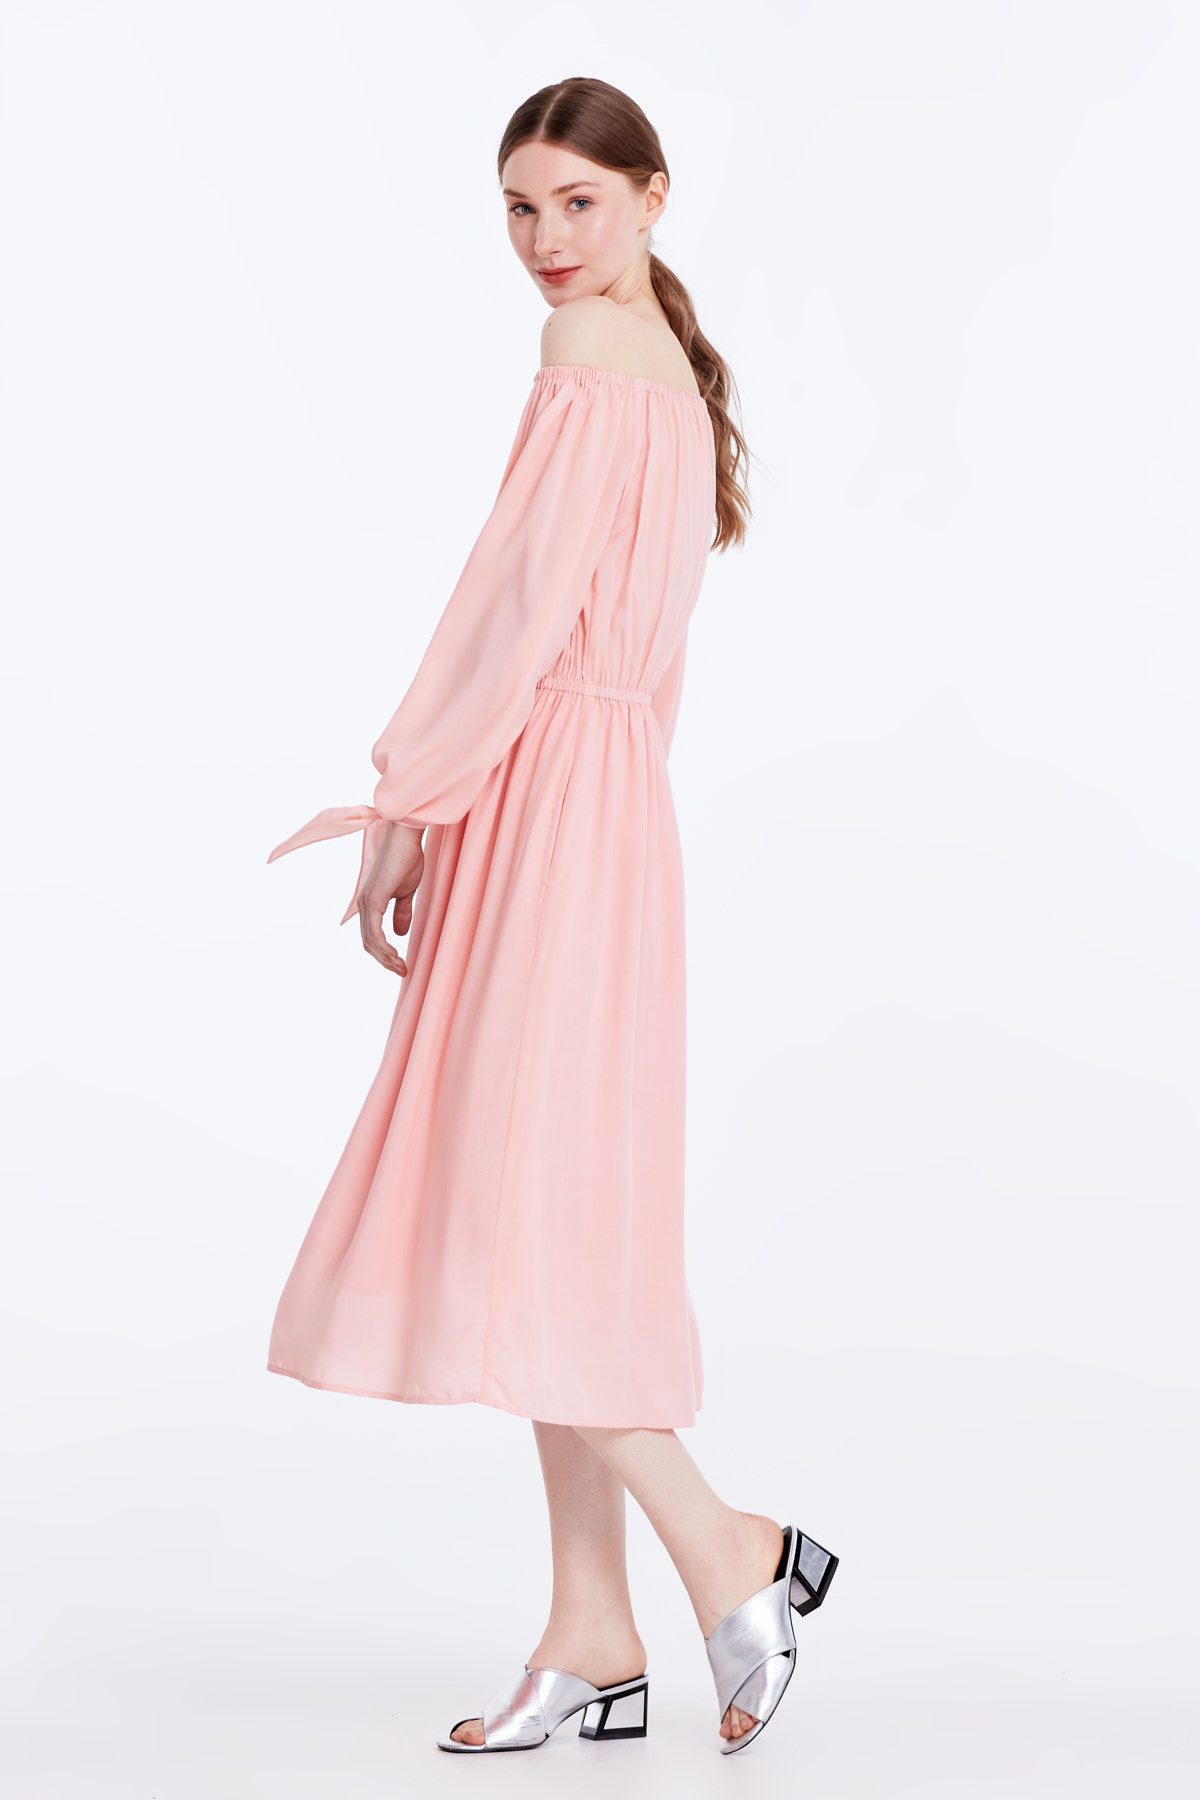 Off-shoulder powder pink dress, photo 5